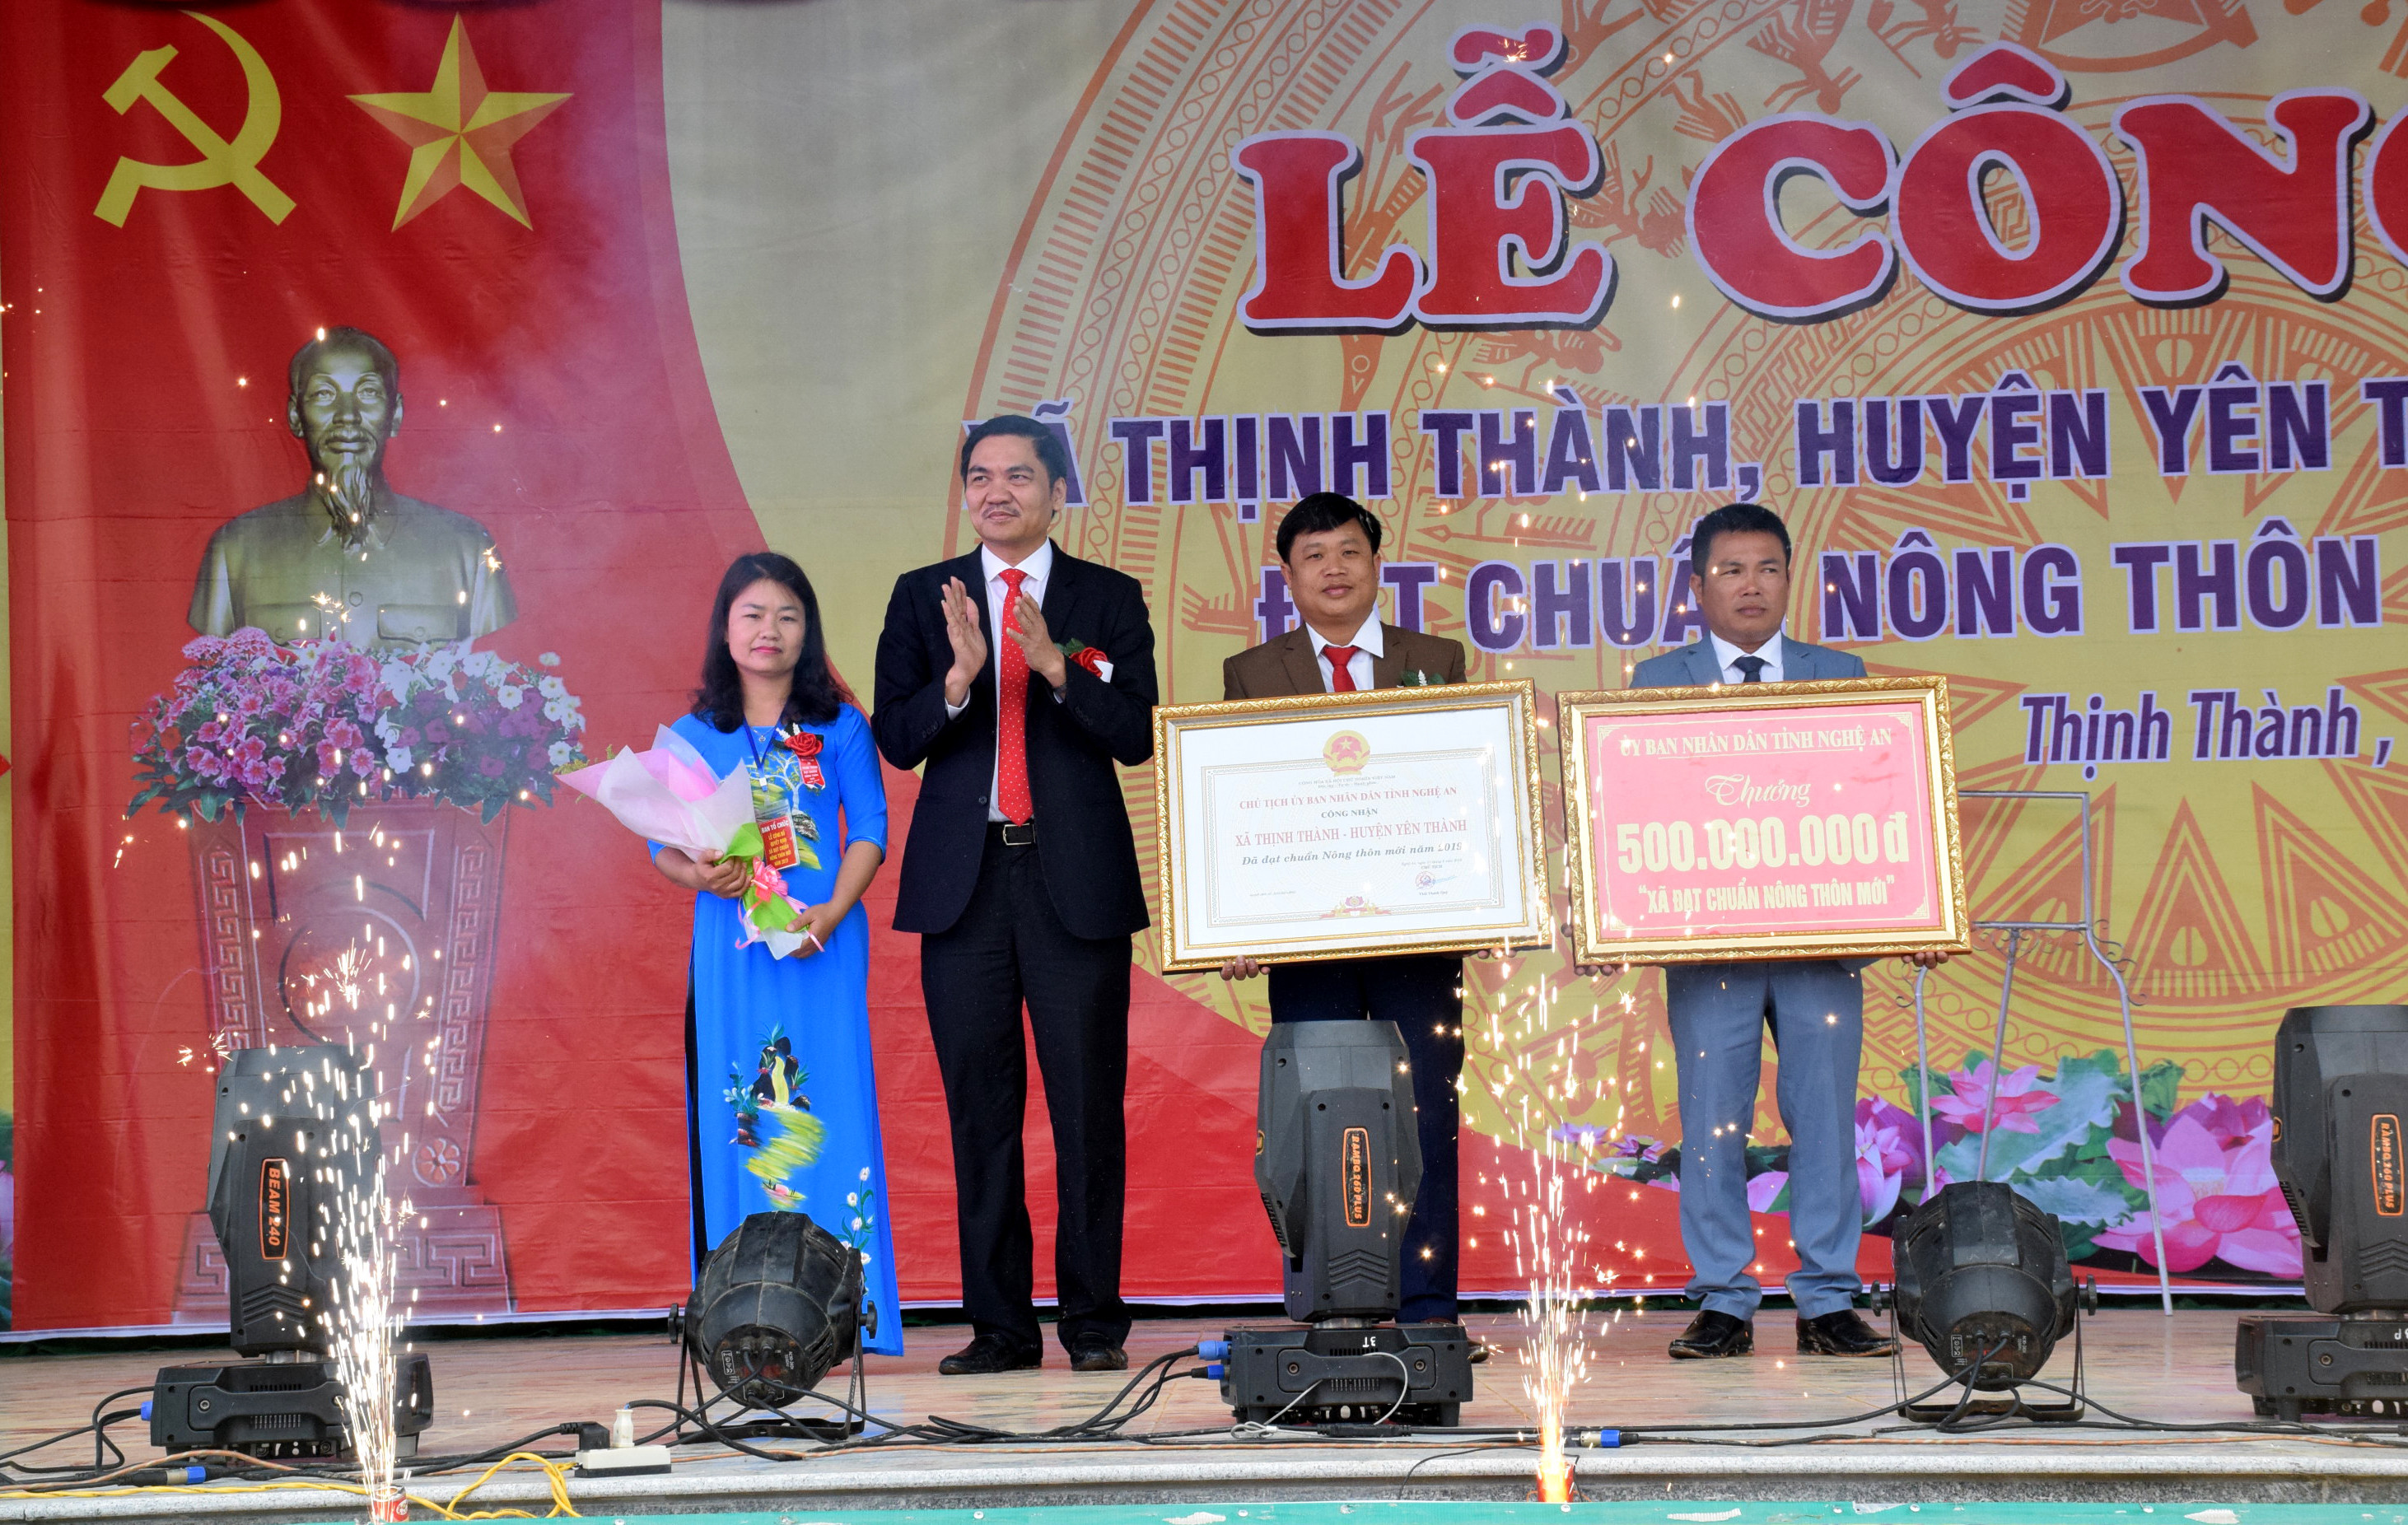 Phó Chủ tịch UBND tỉnh trao Bằng Công nhận xã đạt chuẩn NTM cho Đảng bộ, chính quyền và nhân dân xã Thịnh Thành. Ảnh: Xuân Hoàng